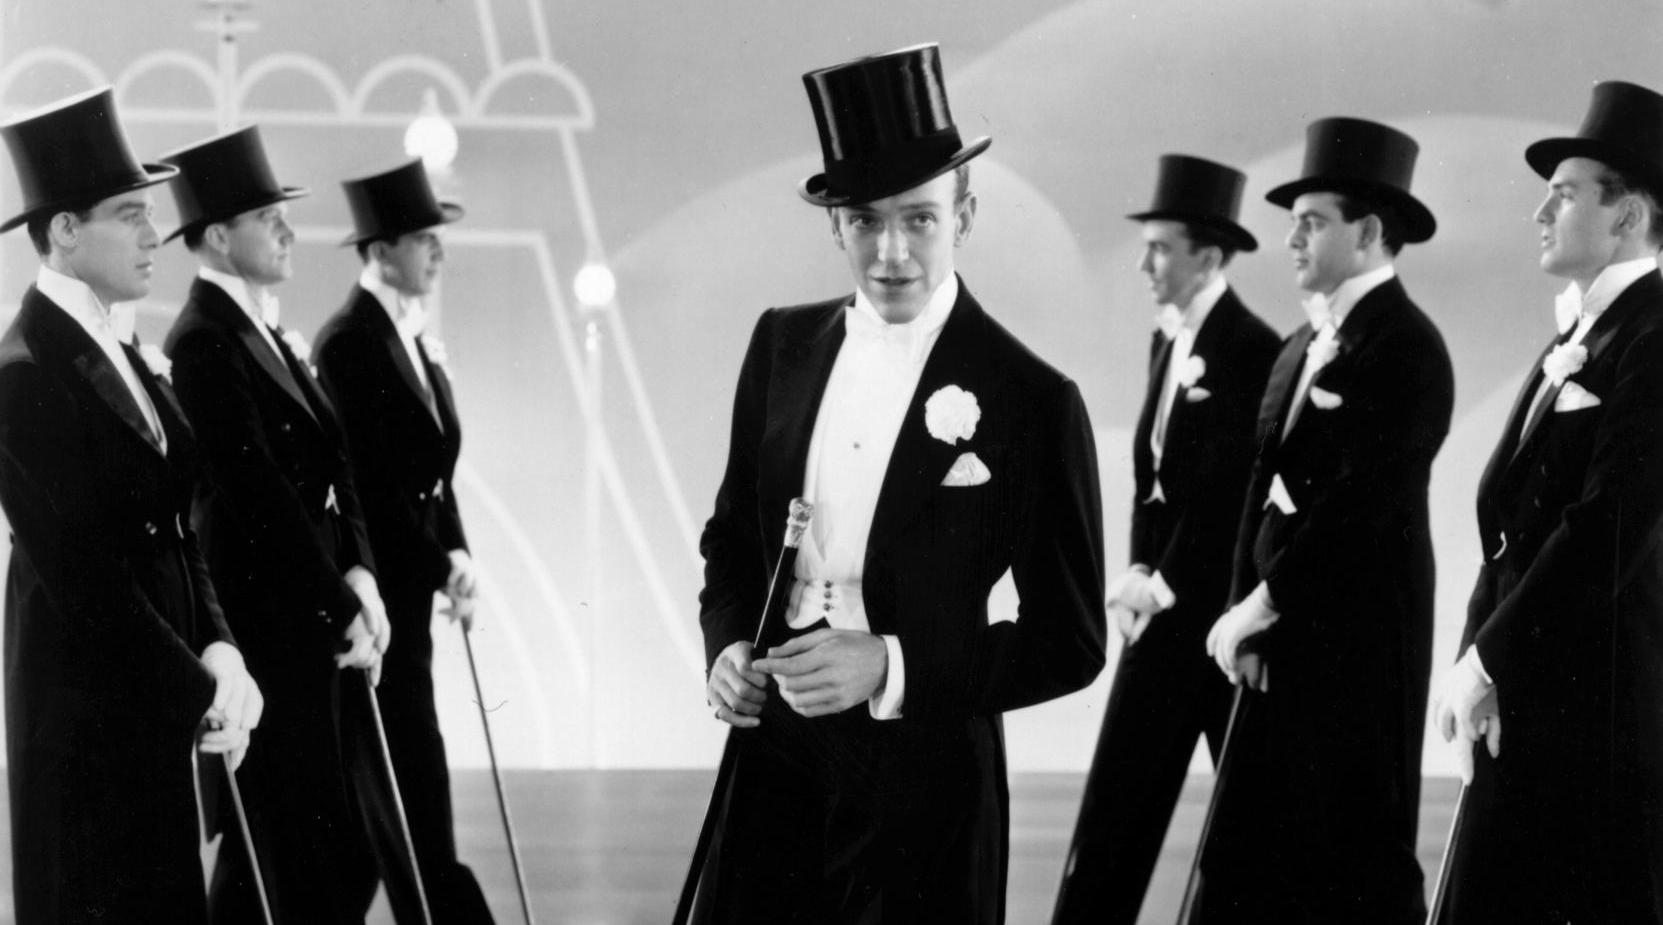 Группа джентльмены. Два джентльмена. Шляпа джентльмена. Танец джентльменов. Человек в цилиндре.